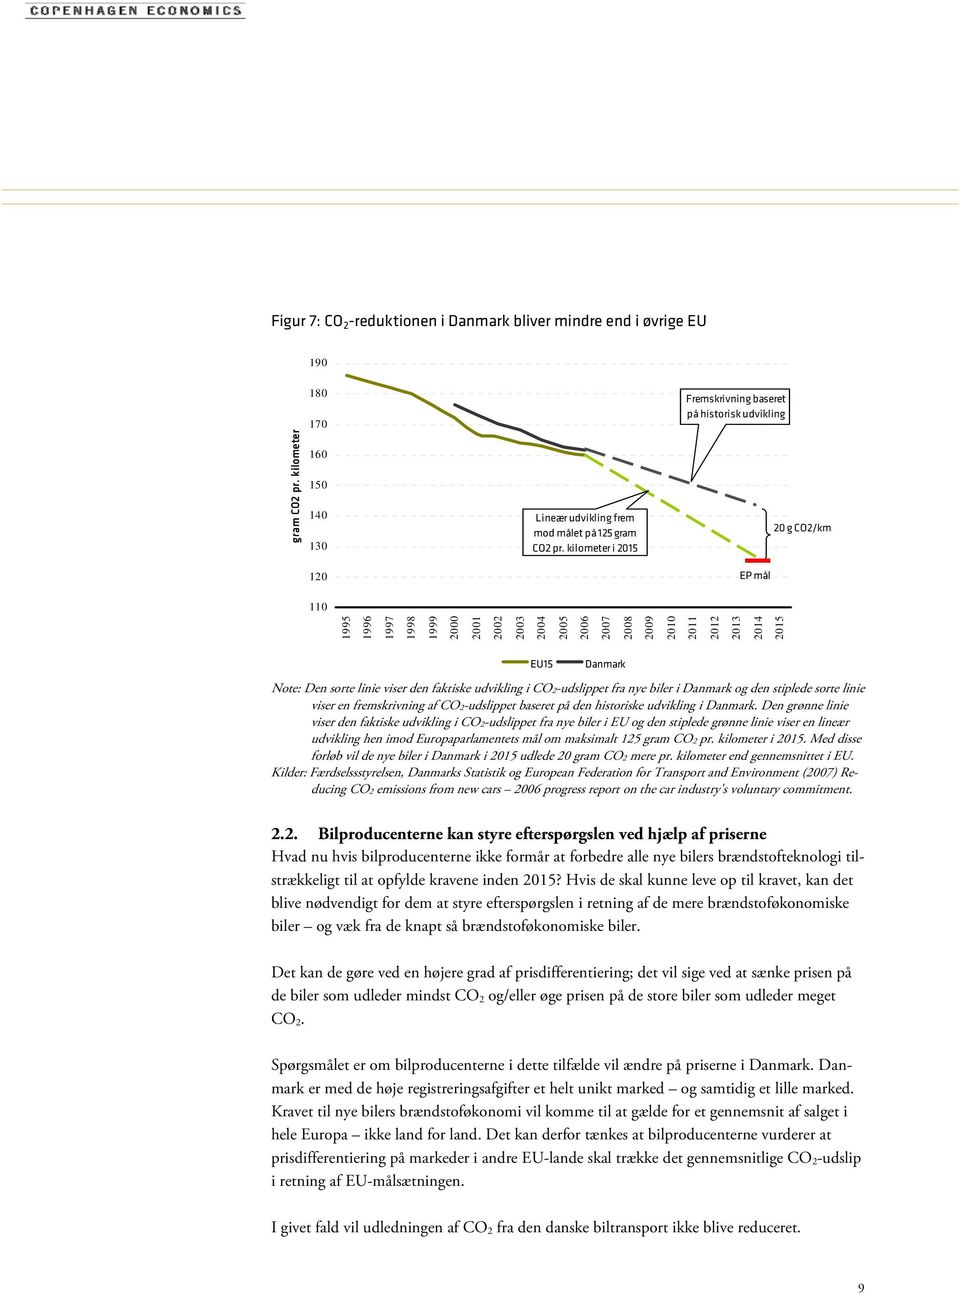 Danmark Note: Den sorte linie viser den faktiske udvikling i CO2-udslippet fra nye biler i Danmark og den stiplede sorte linie viser en fremskrivning af CO2-udslippet baseret på den historiske